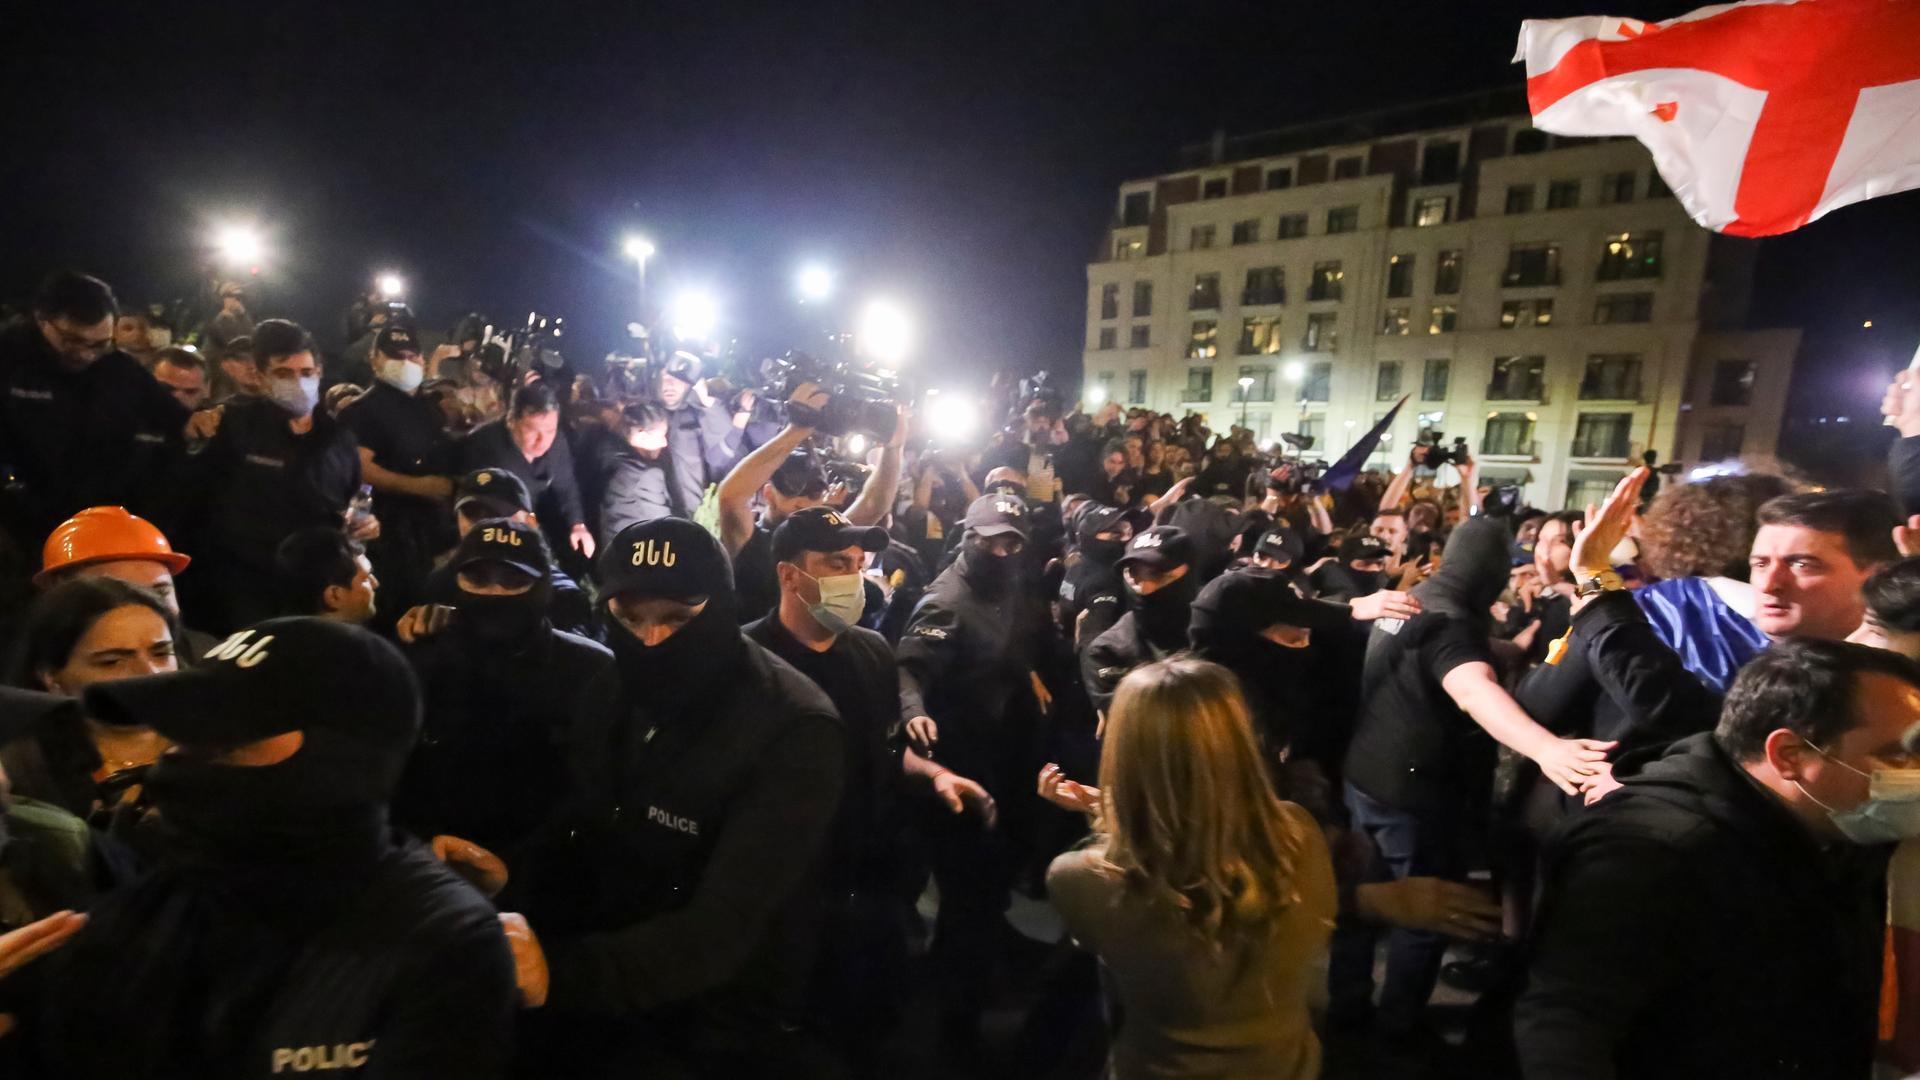 Vermummte Polizisten in Uniform versuchen, Demonstranten aufzuhalten, die sich vor dem Parlamentsgebäude in Tiflis versammelt haben. 